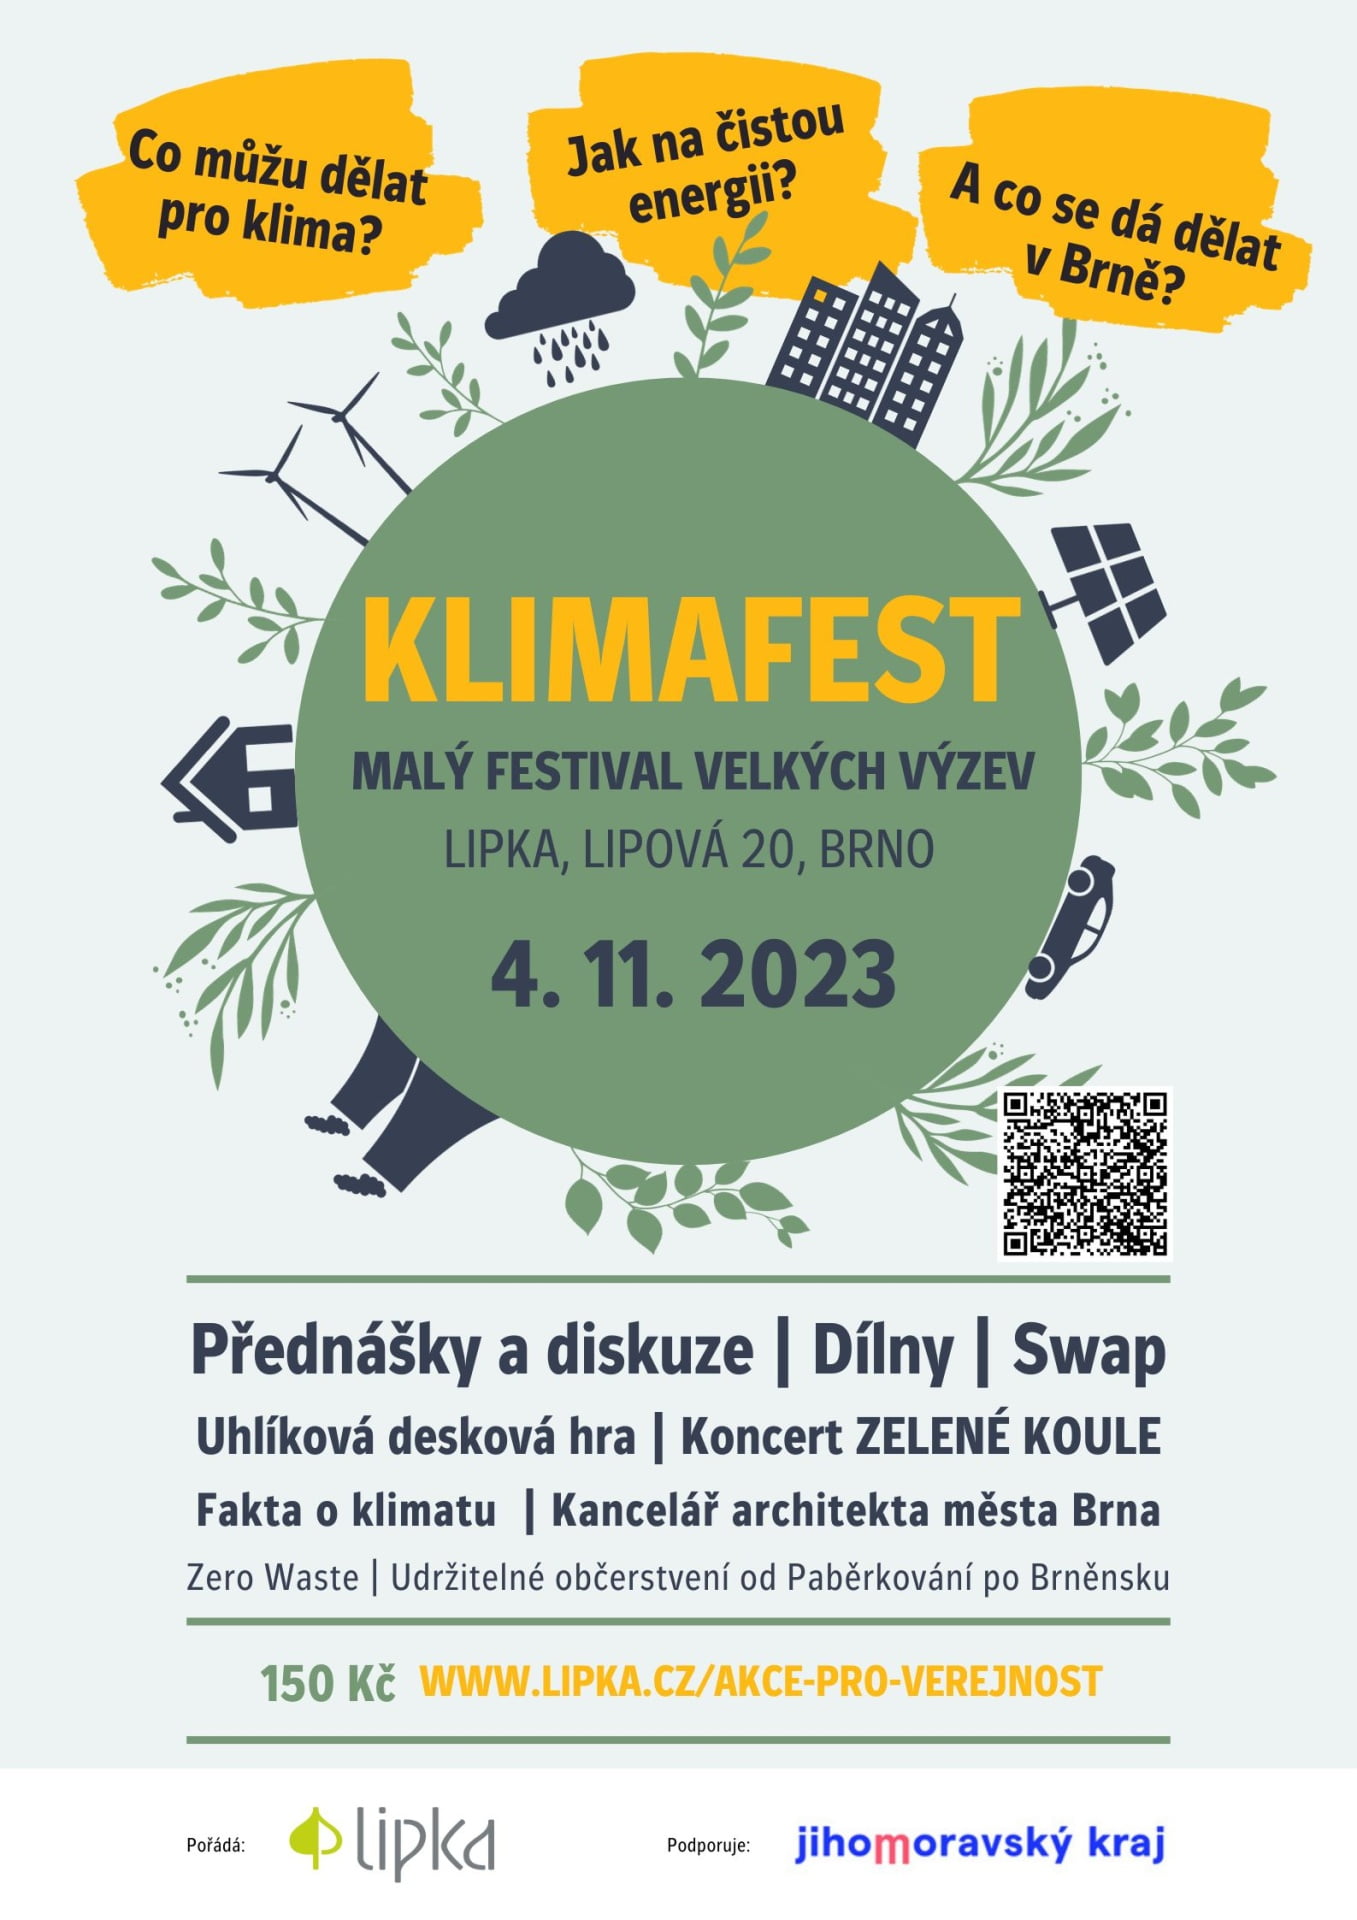 Klimafest: Malý festival velkých výzev